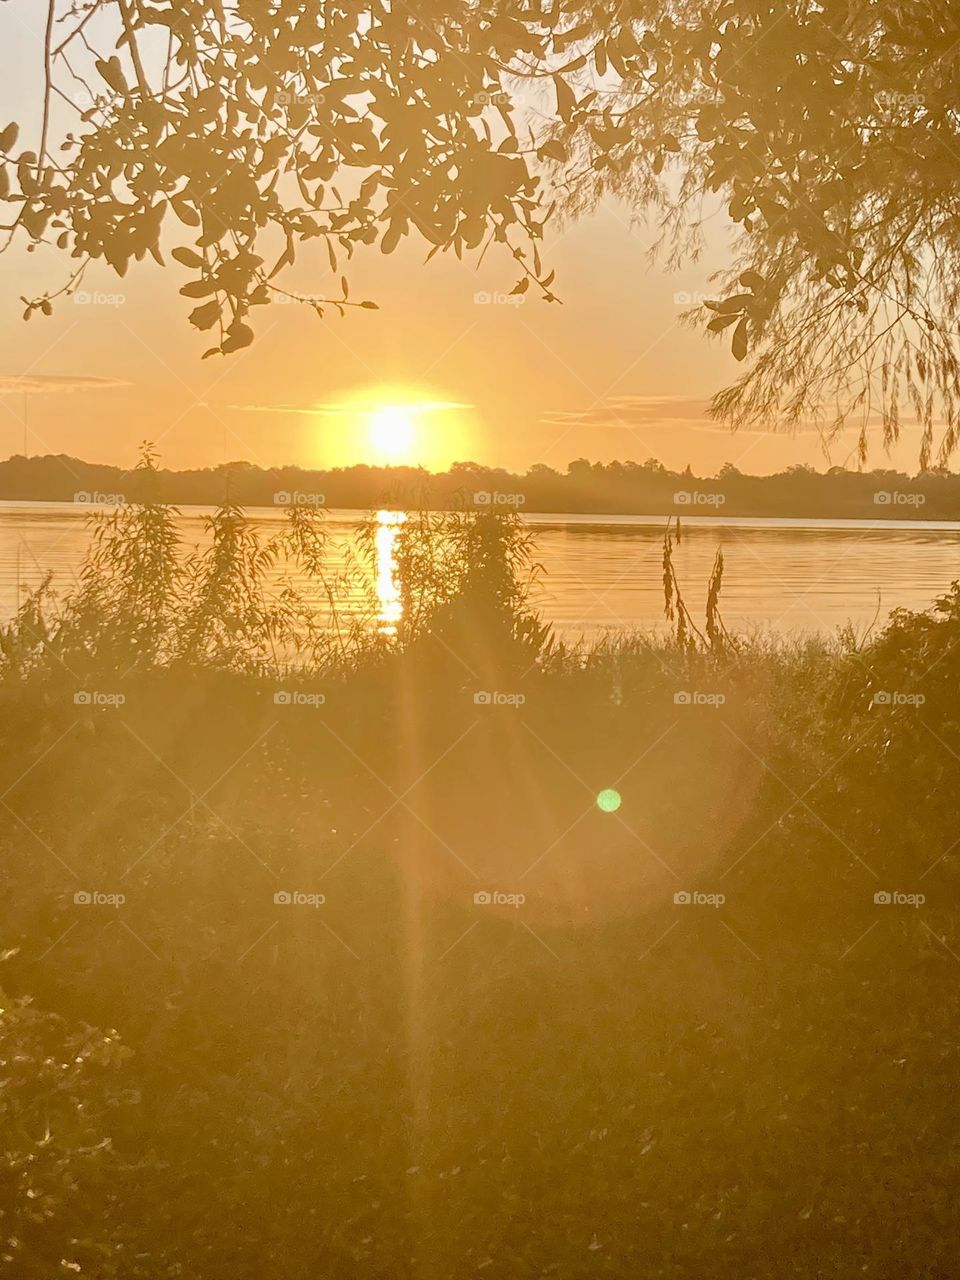 Sunrise at the lake